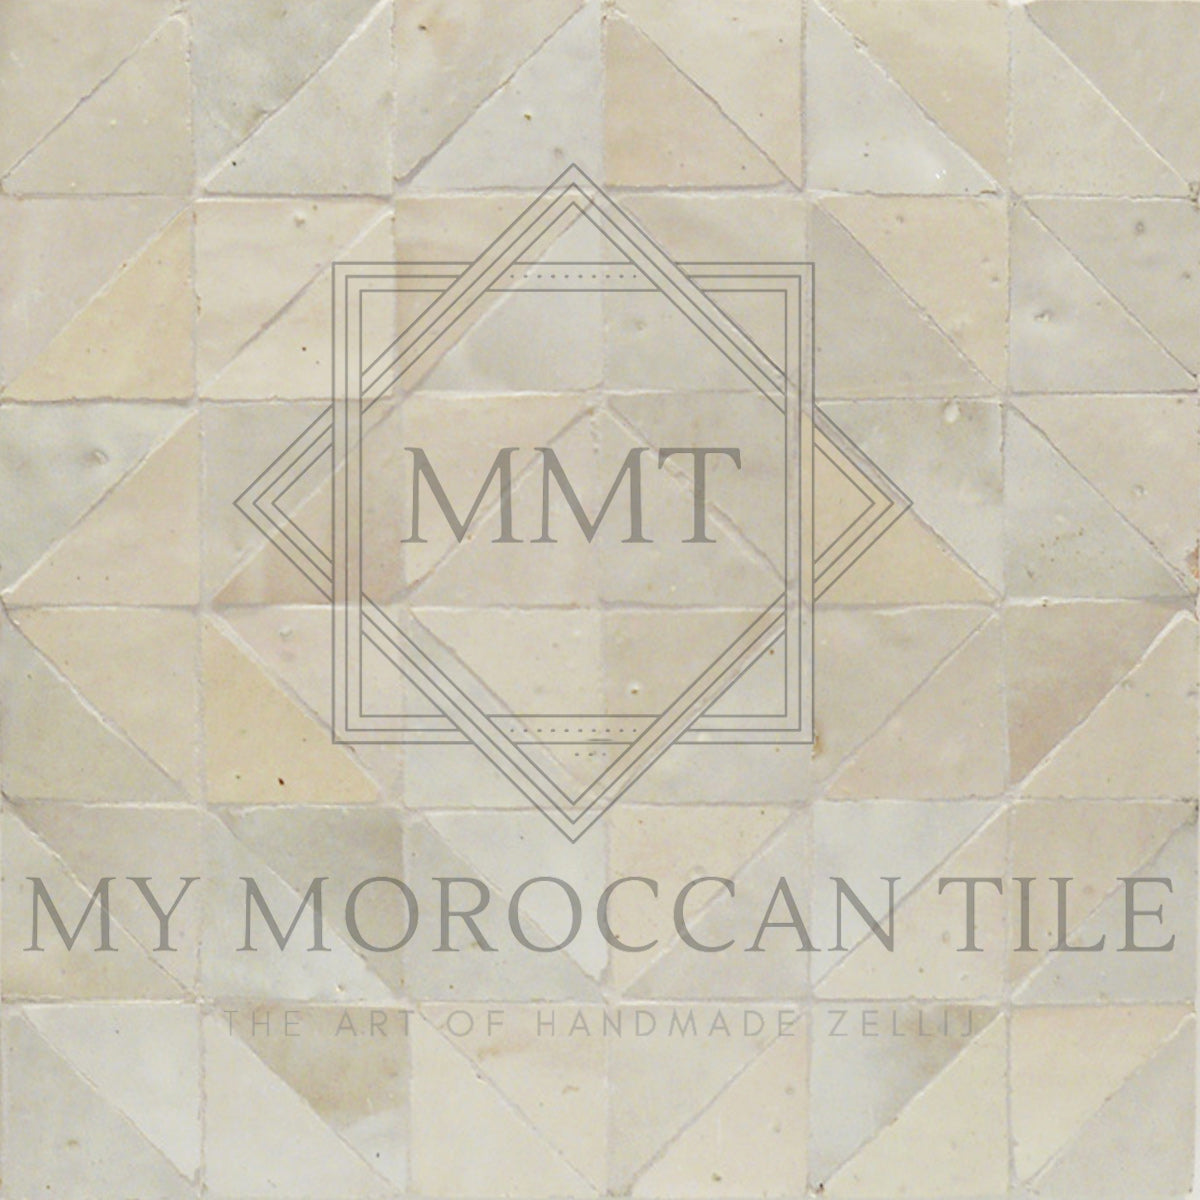 Tuile de zellij marocain Talet 2 x 2